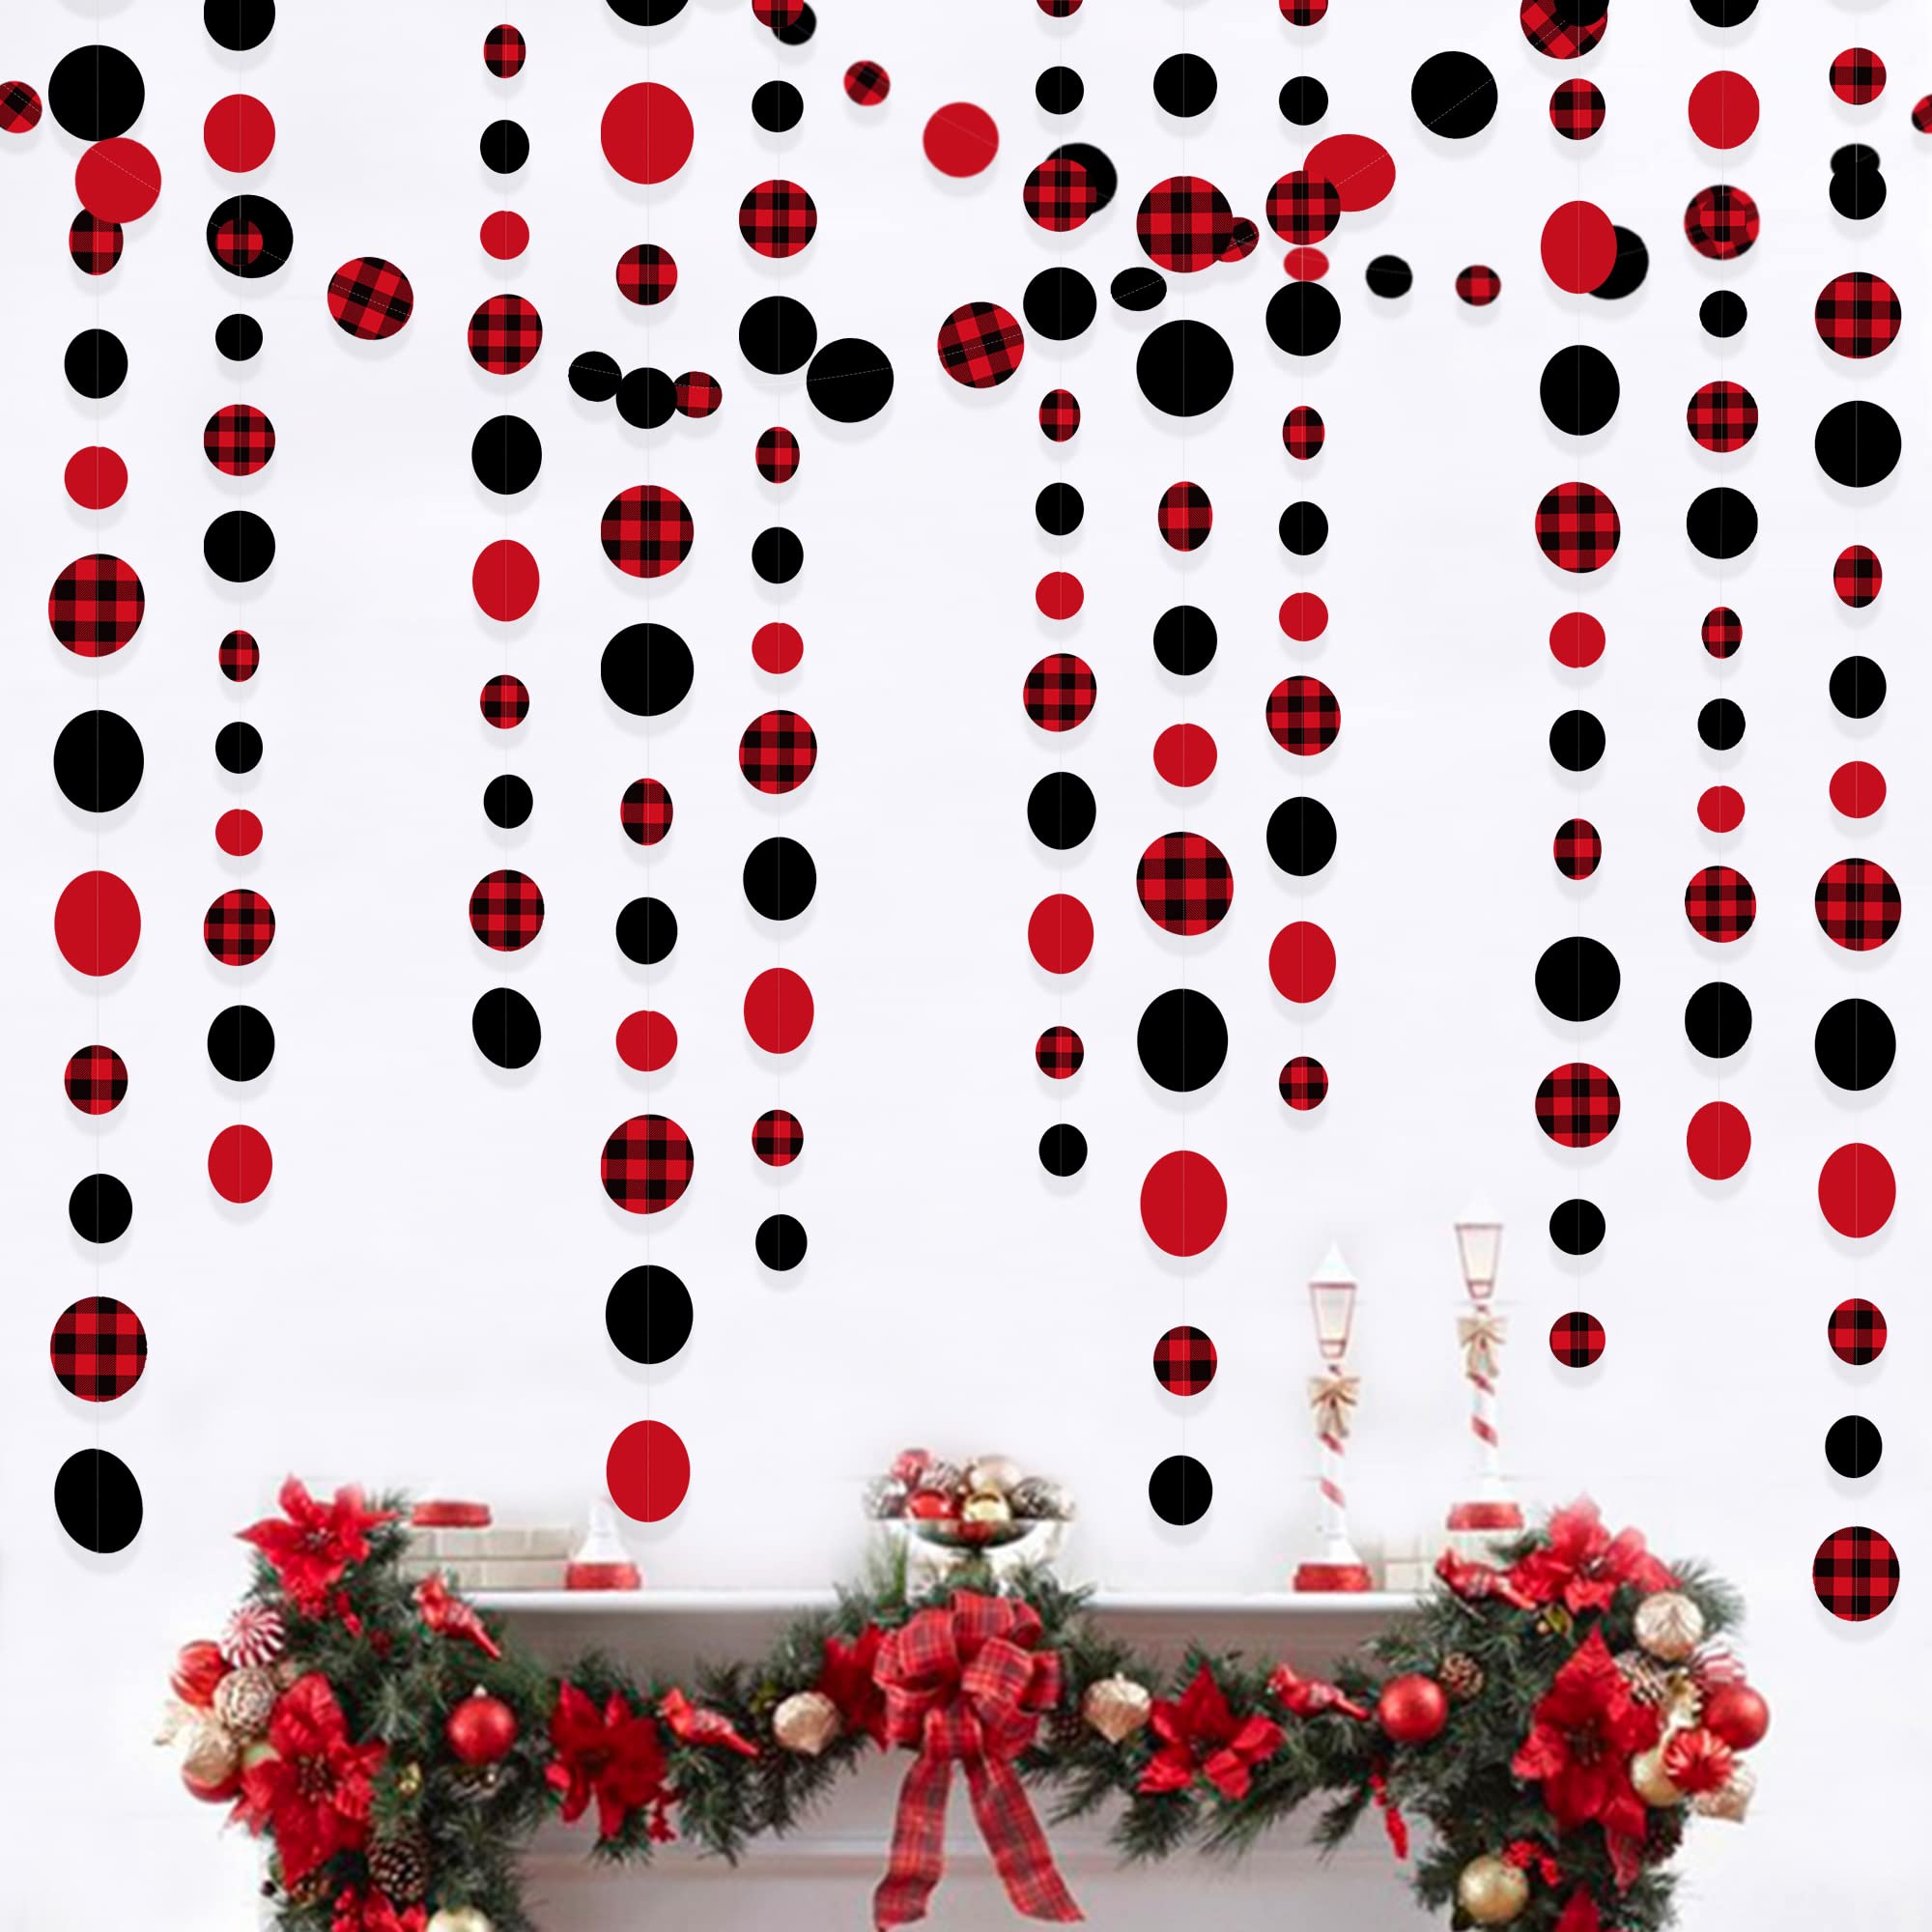 PinkBlume 赤と黒の格子縞サイズの サークル ドット 紙ガーランド 約14m長 クリスマスレッドブラック バッファローチェックポルカドット ホオジロ 花輪バナー パーティーの装飾 結婚式吊り飾り 誕生日 飾り付け ハロウィンパーティーデコレーション用品